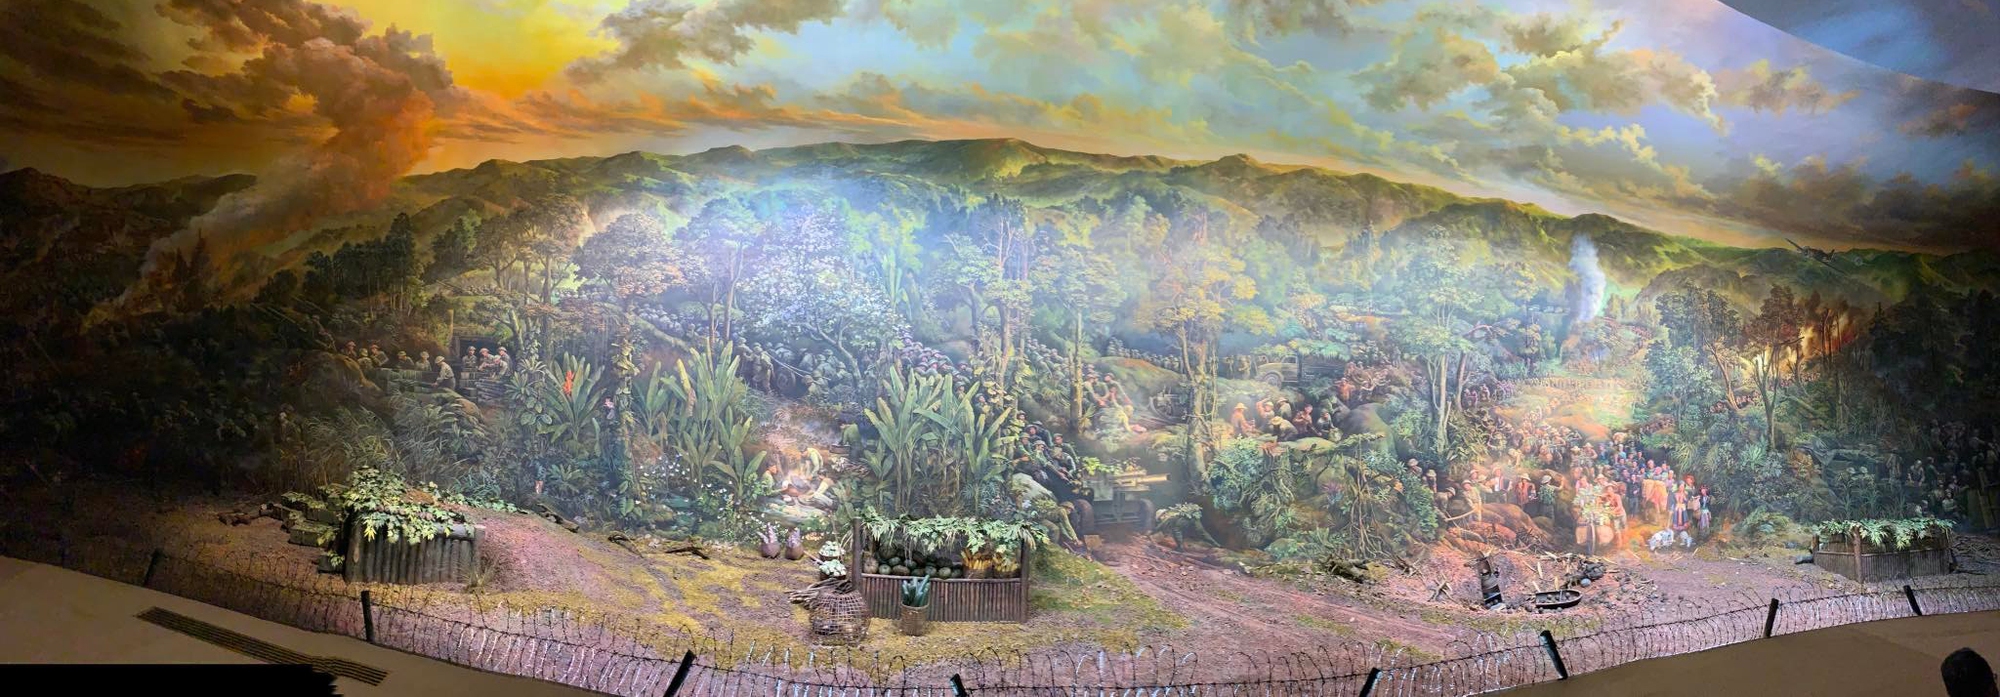 Ấn tượng tranh panorama tái hiện Chiến thắng Điện Biên - Ảnh 2.